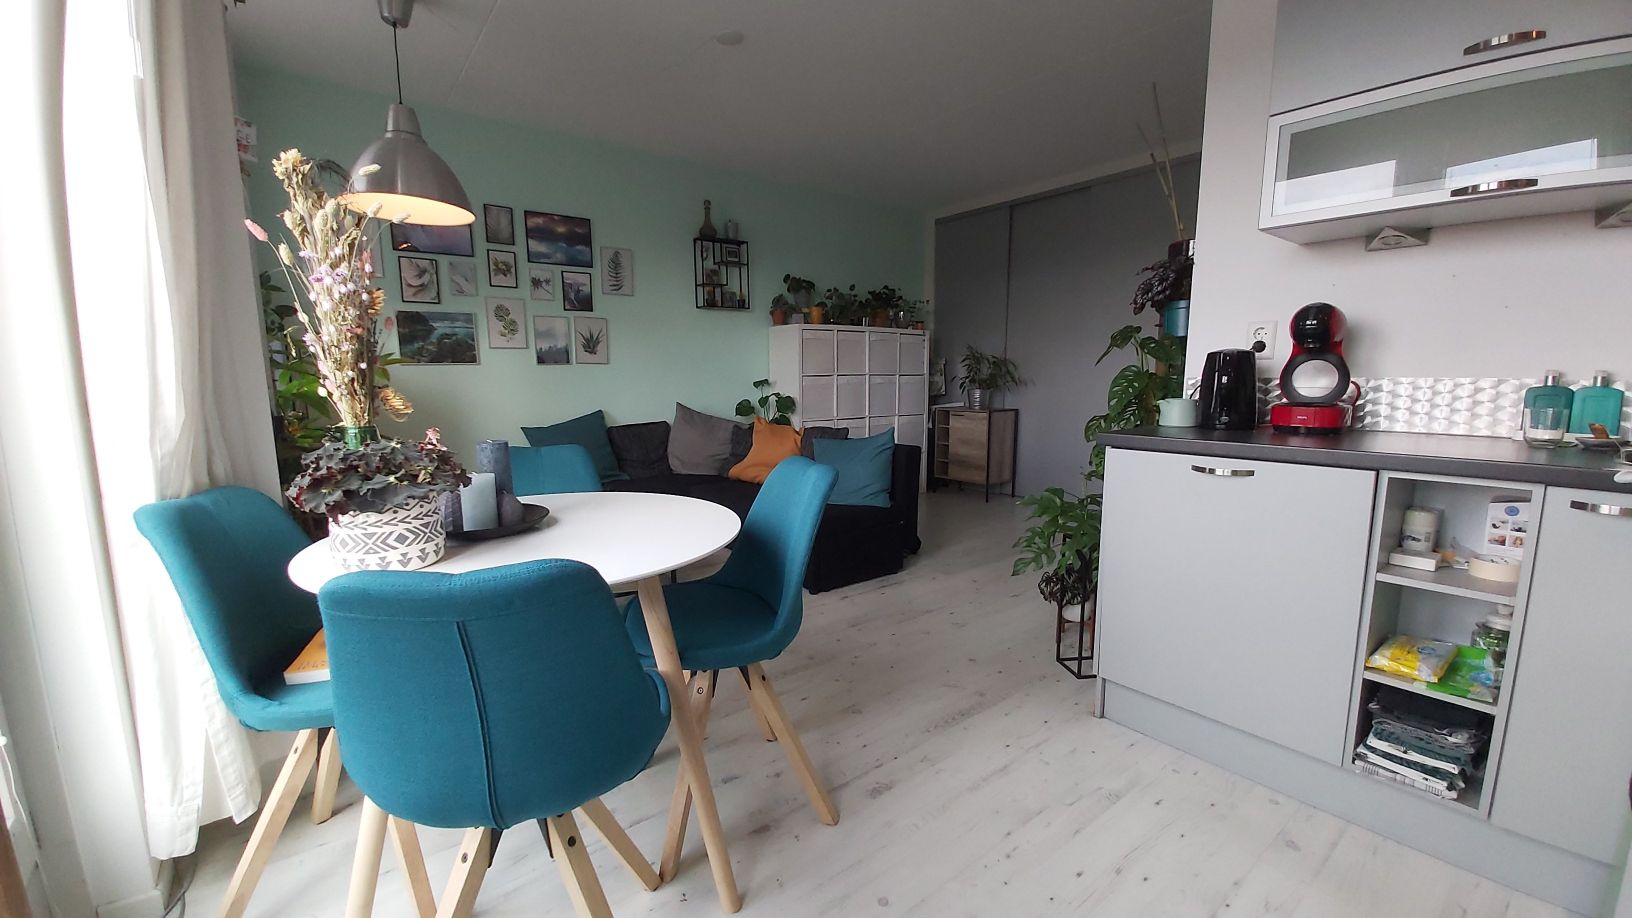 Bekijk foto 1/14 van apartment in Tilburg